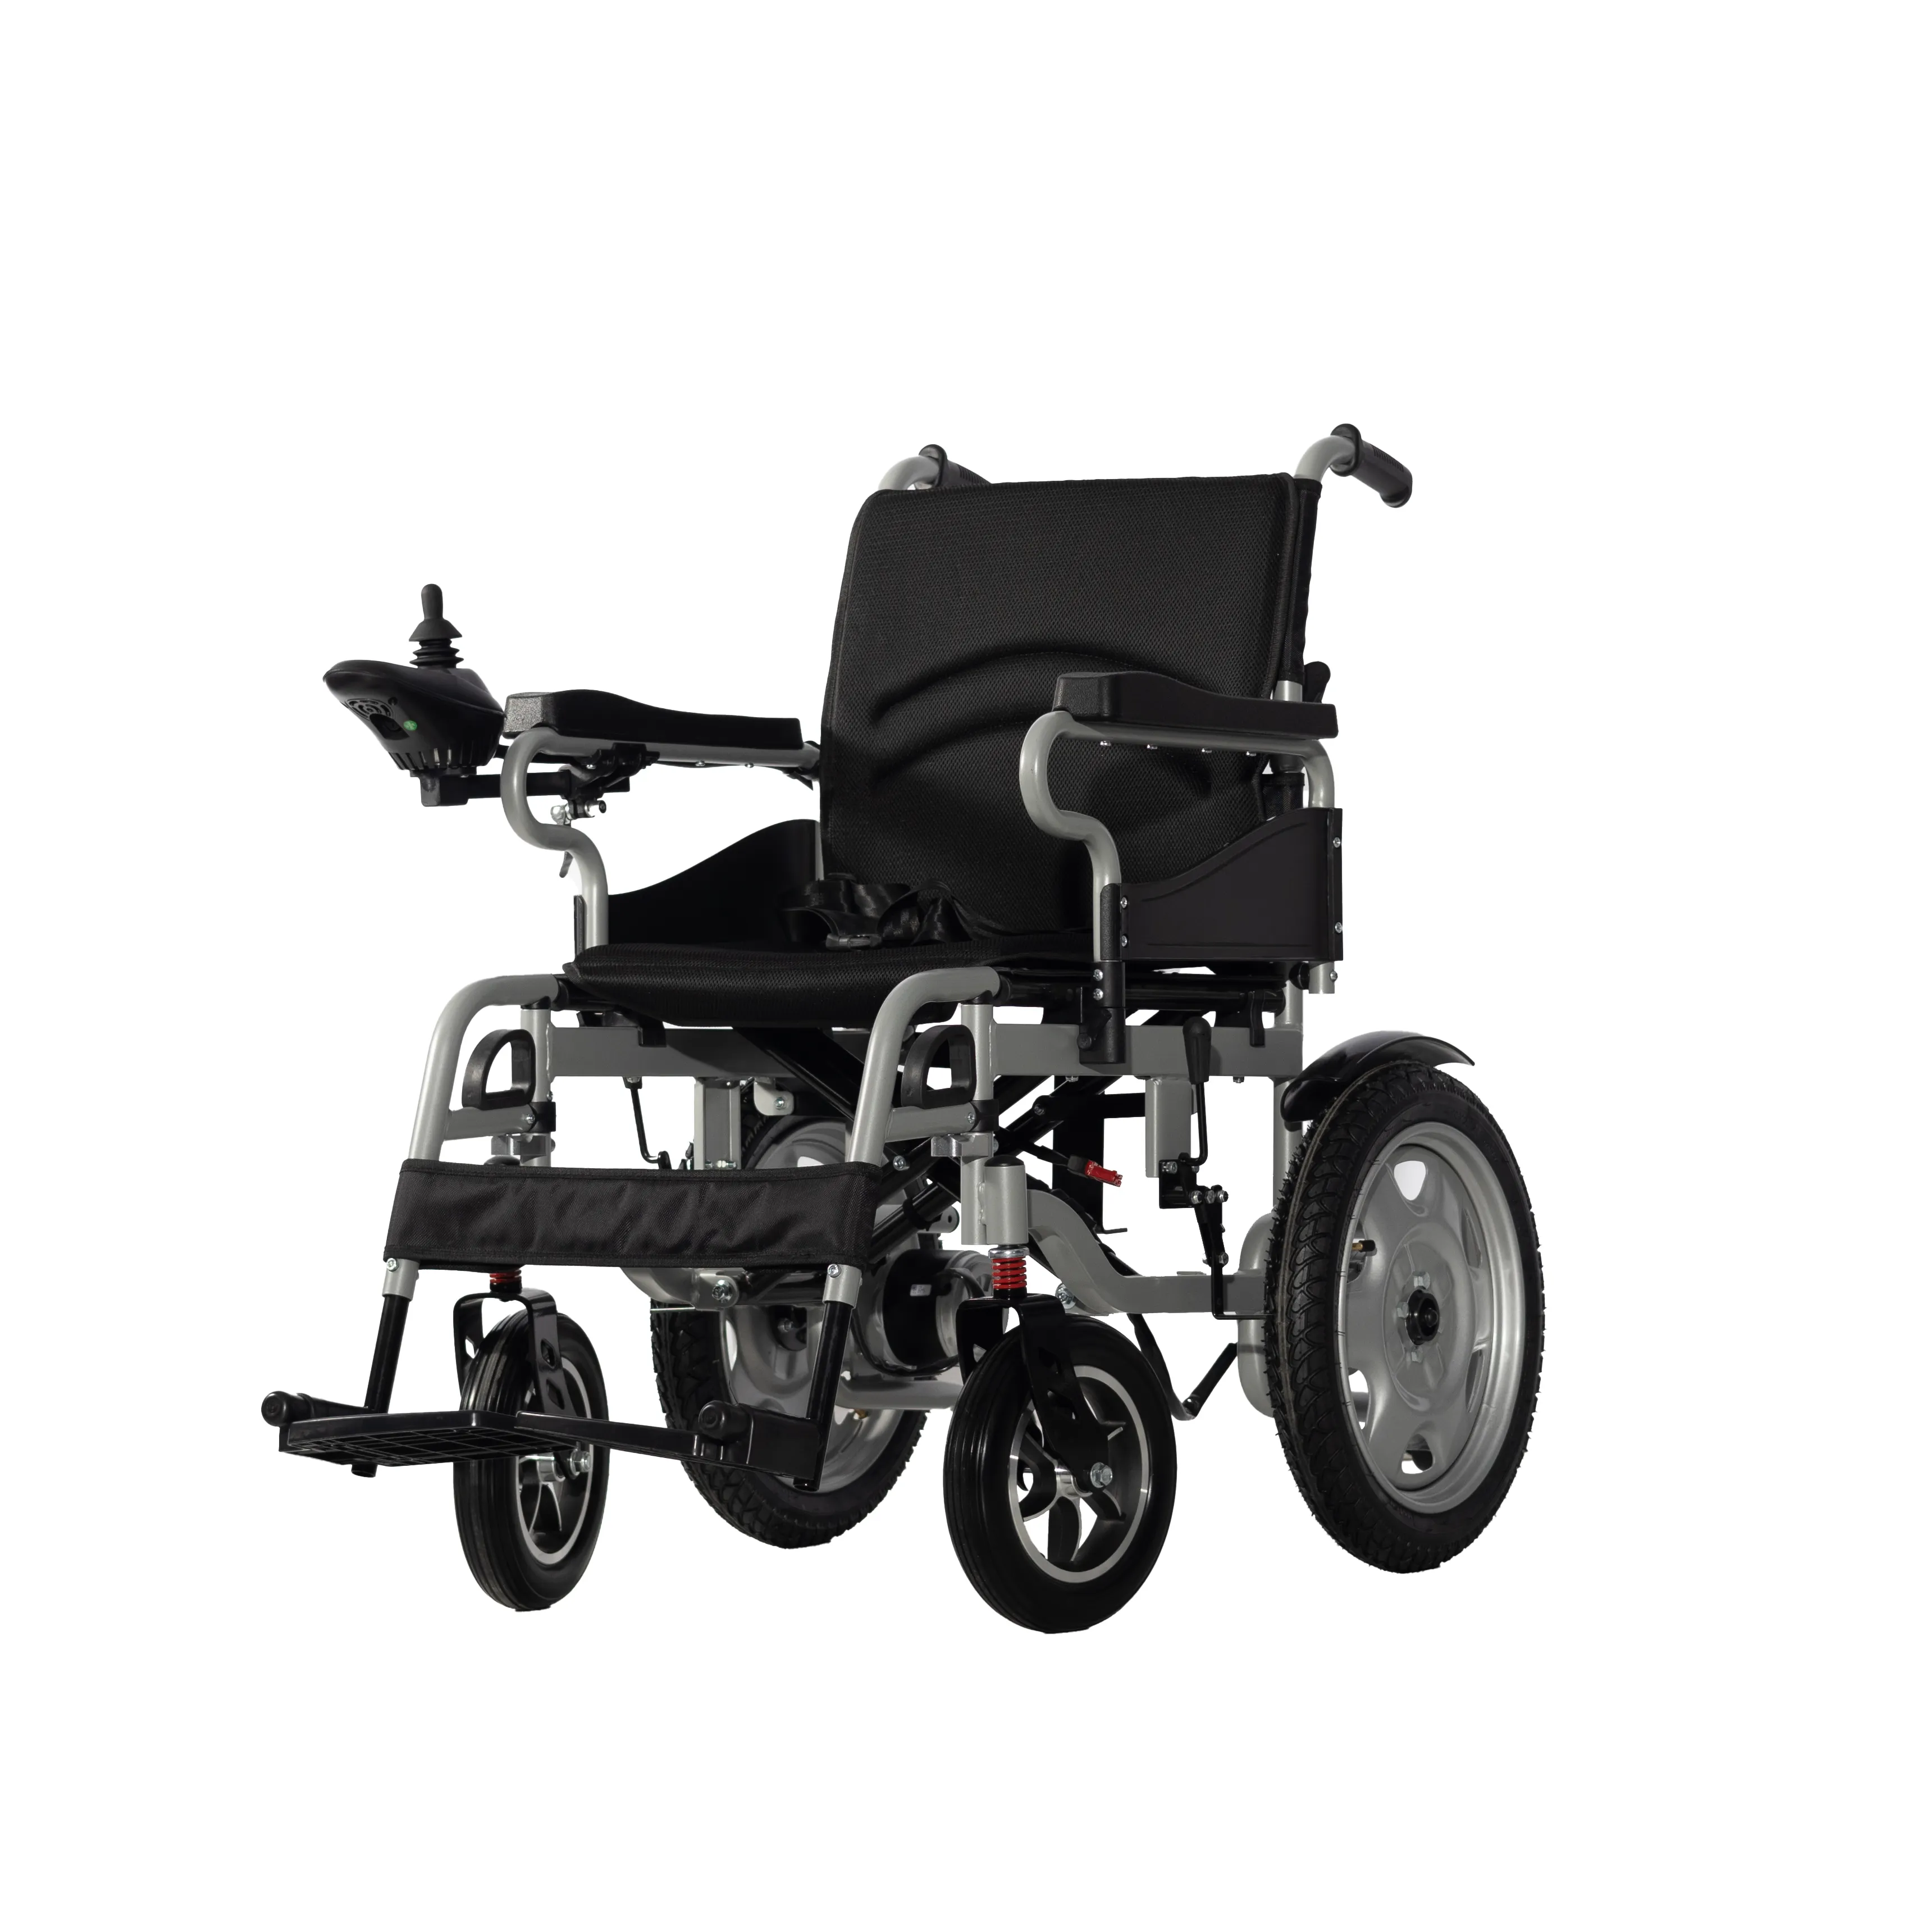 J&J Mobility cadeira de rodas elétrica pequena dobrável preço barato para pessoas com deficiência